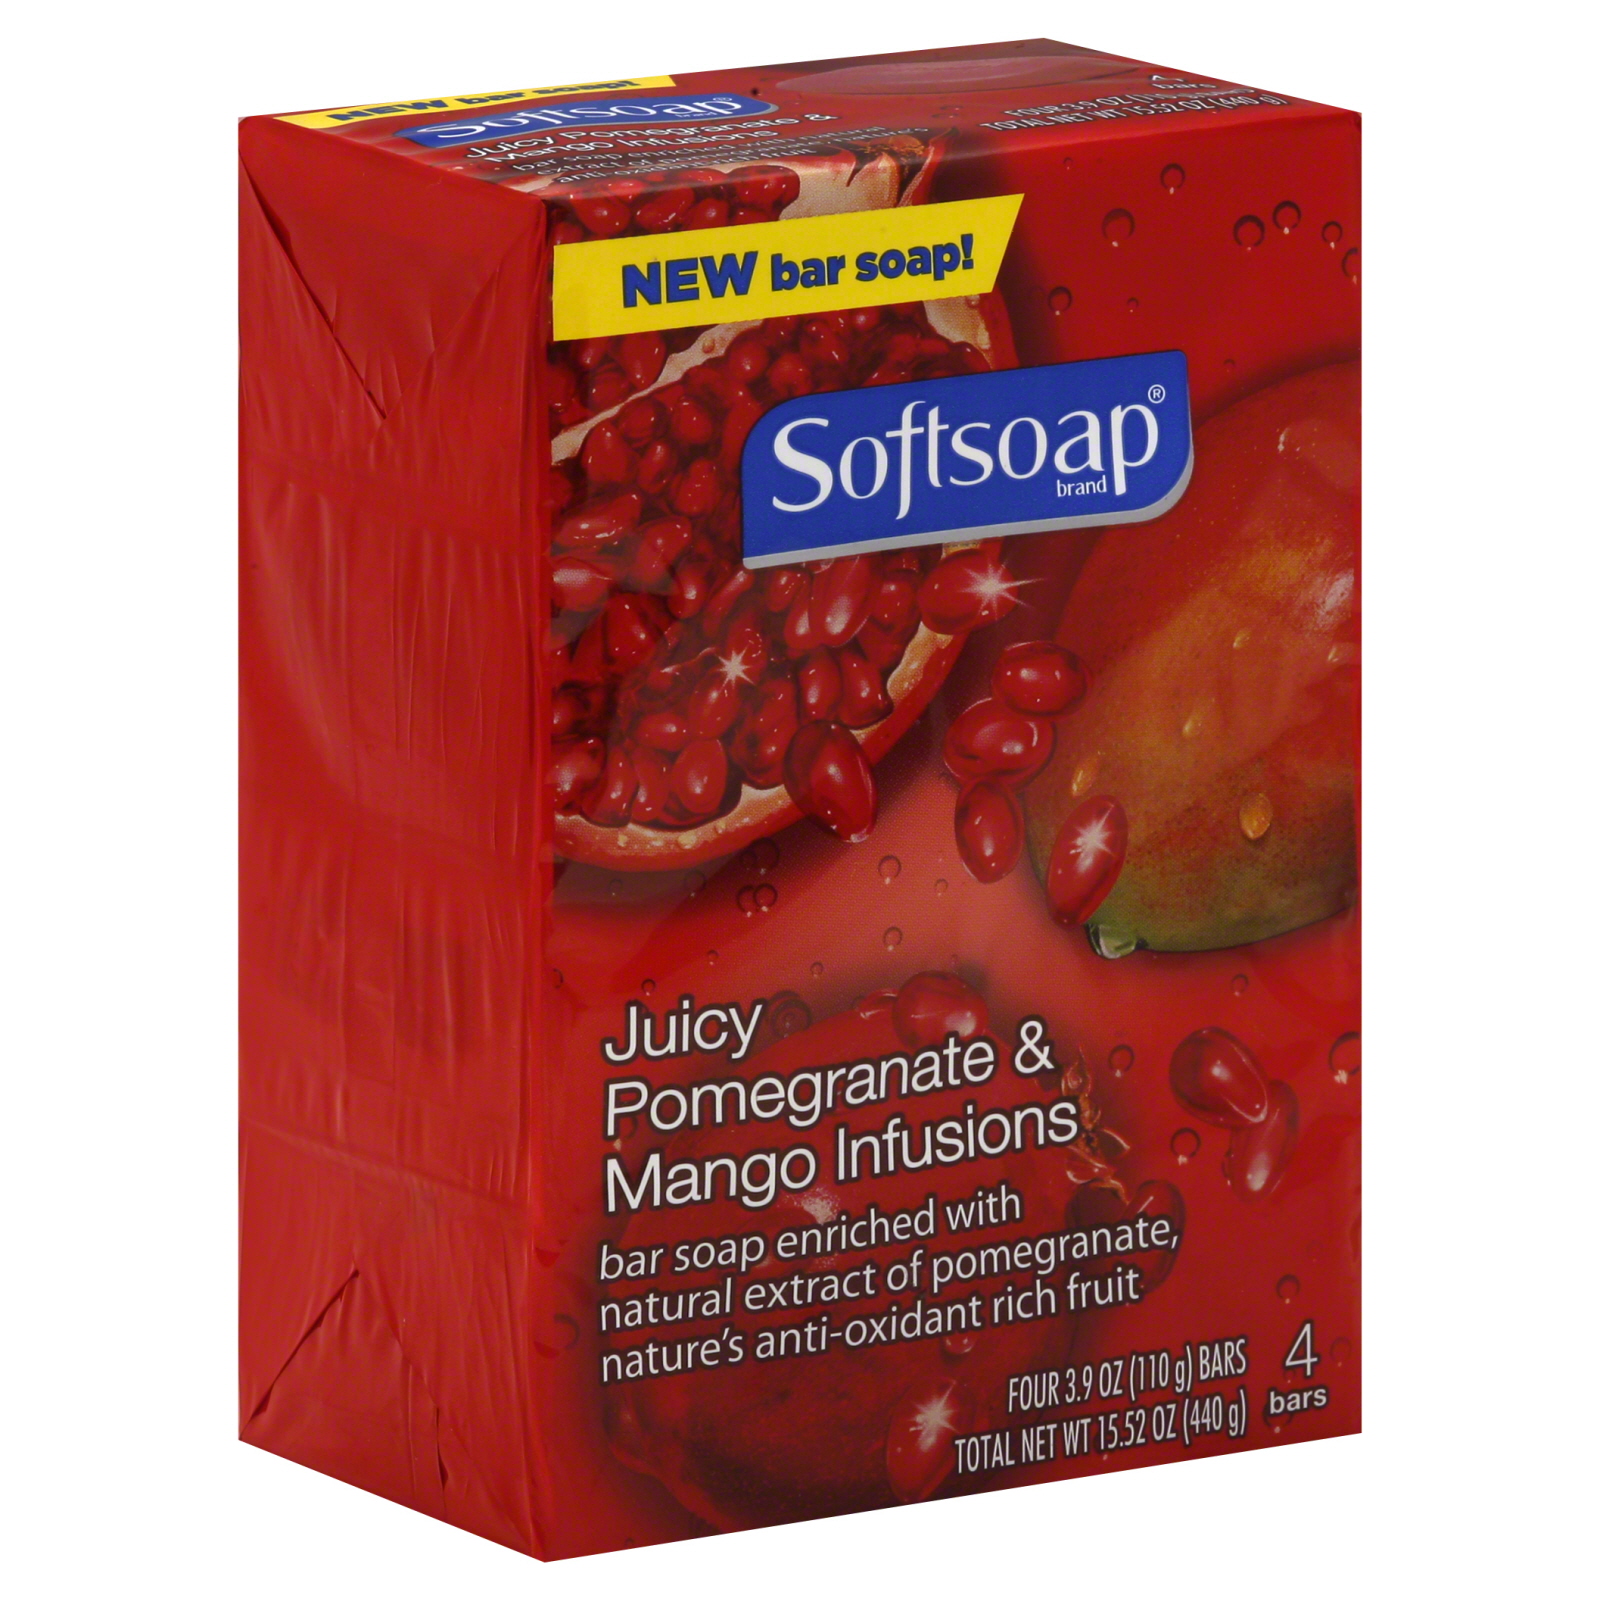 Softsoap Juicy Pomegranate & Mango Infusions Bar Soap- 4 PK